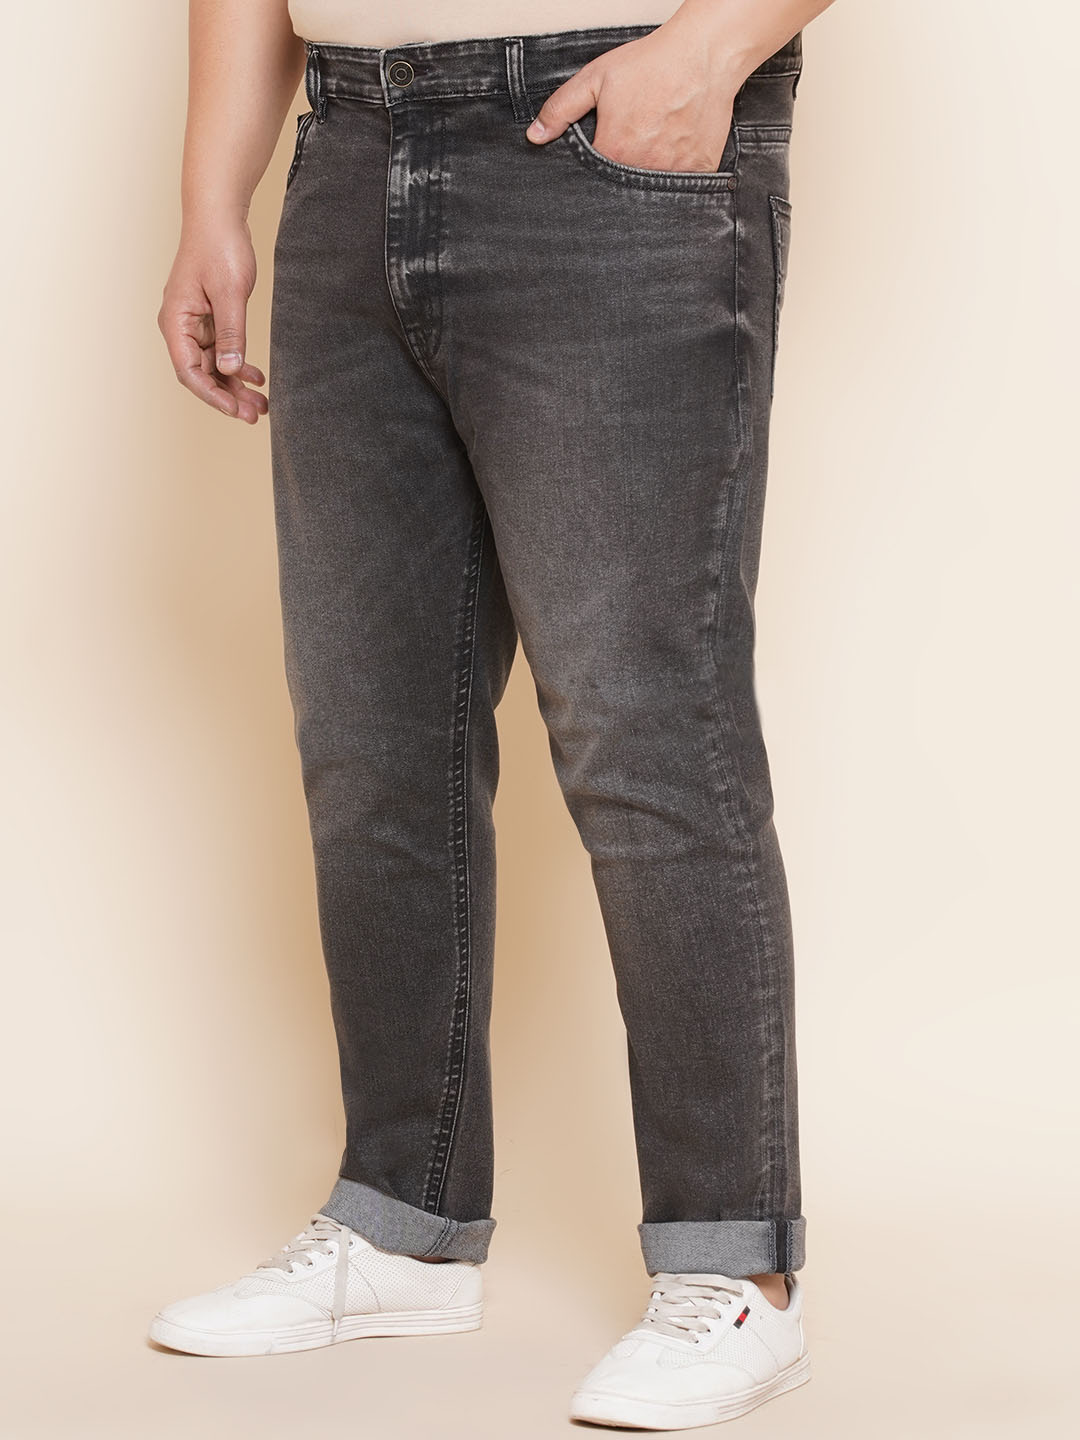 bottomwear/jeans/JPJ27016/jpj27016-4.jpg